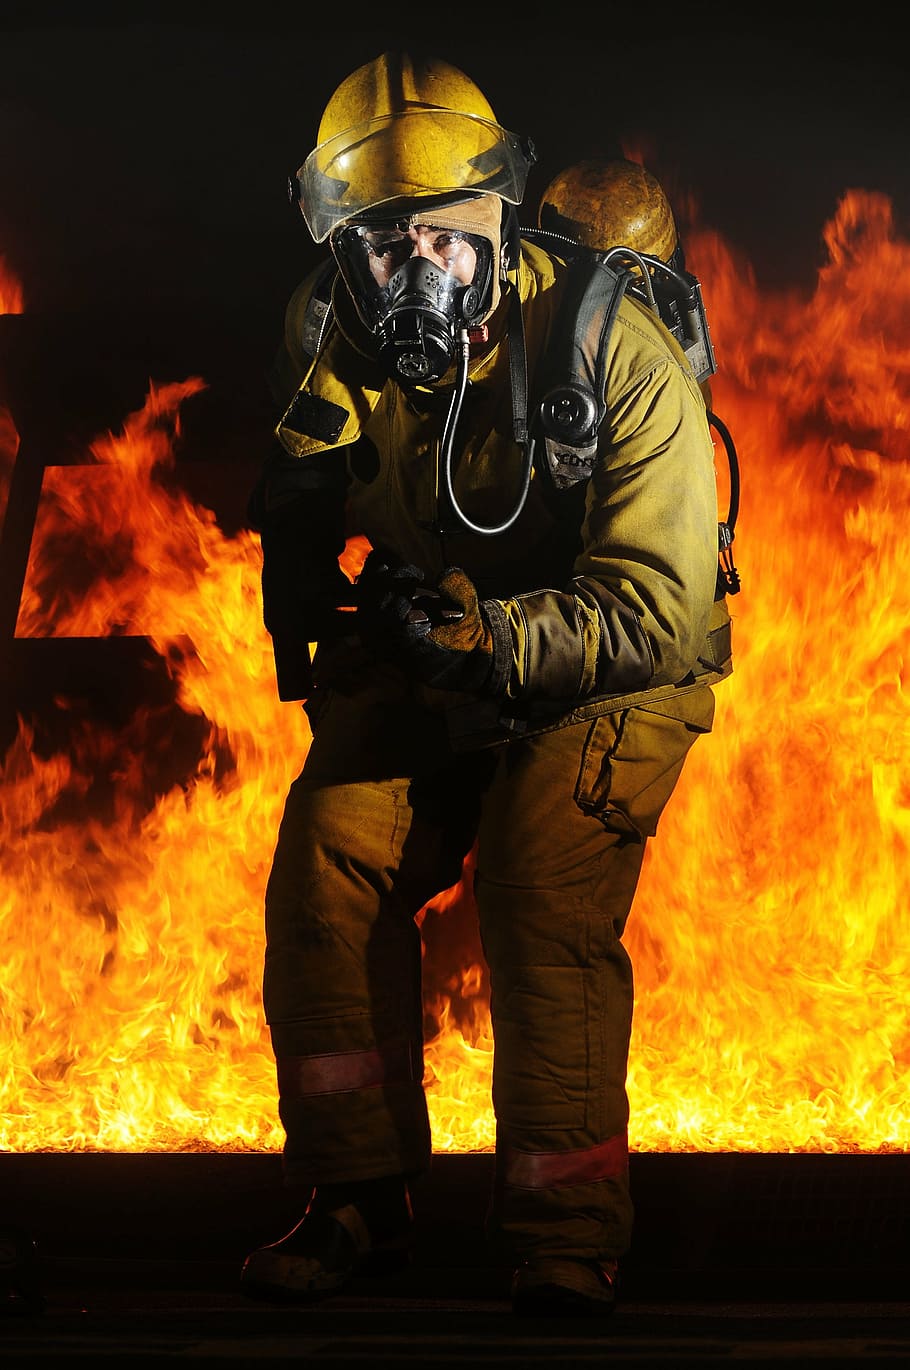 firelighter, fire background, firefighter, fire, portrait, training, monitor, hot, heat, dangerous